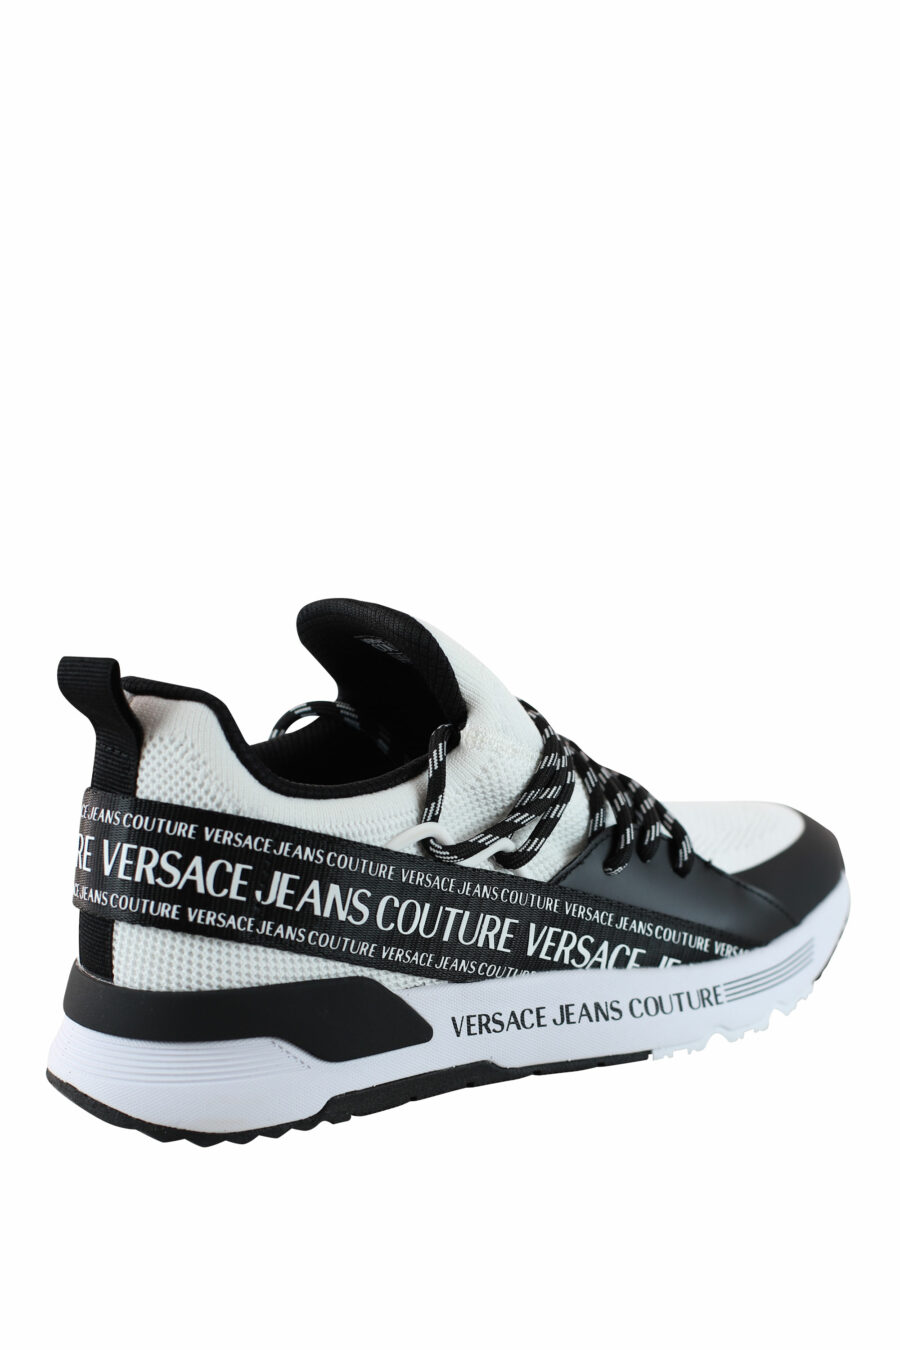 Zapatillas blancas y negras "dynamic" estilo calcetin con logo en cinta - IMG 4515